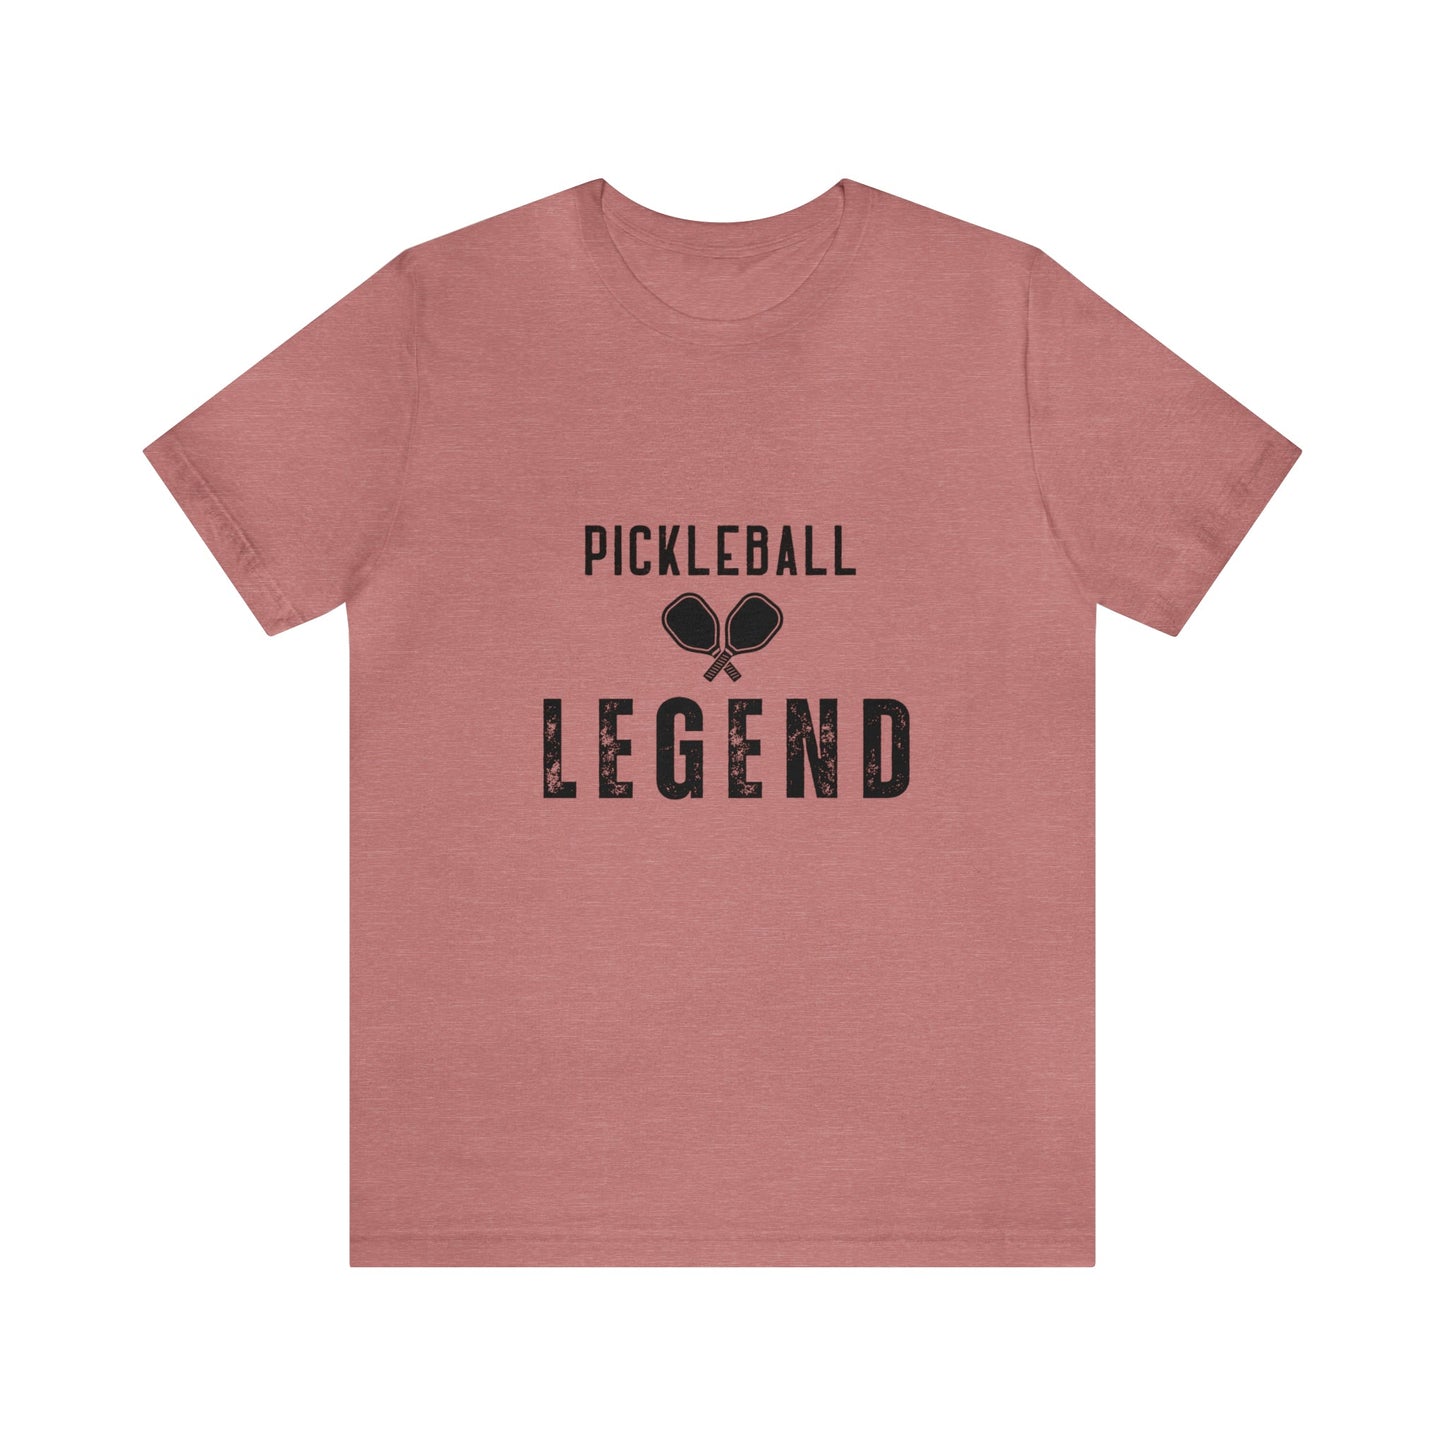 'Pickleball Legend' T-Shirt